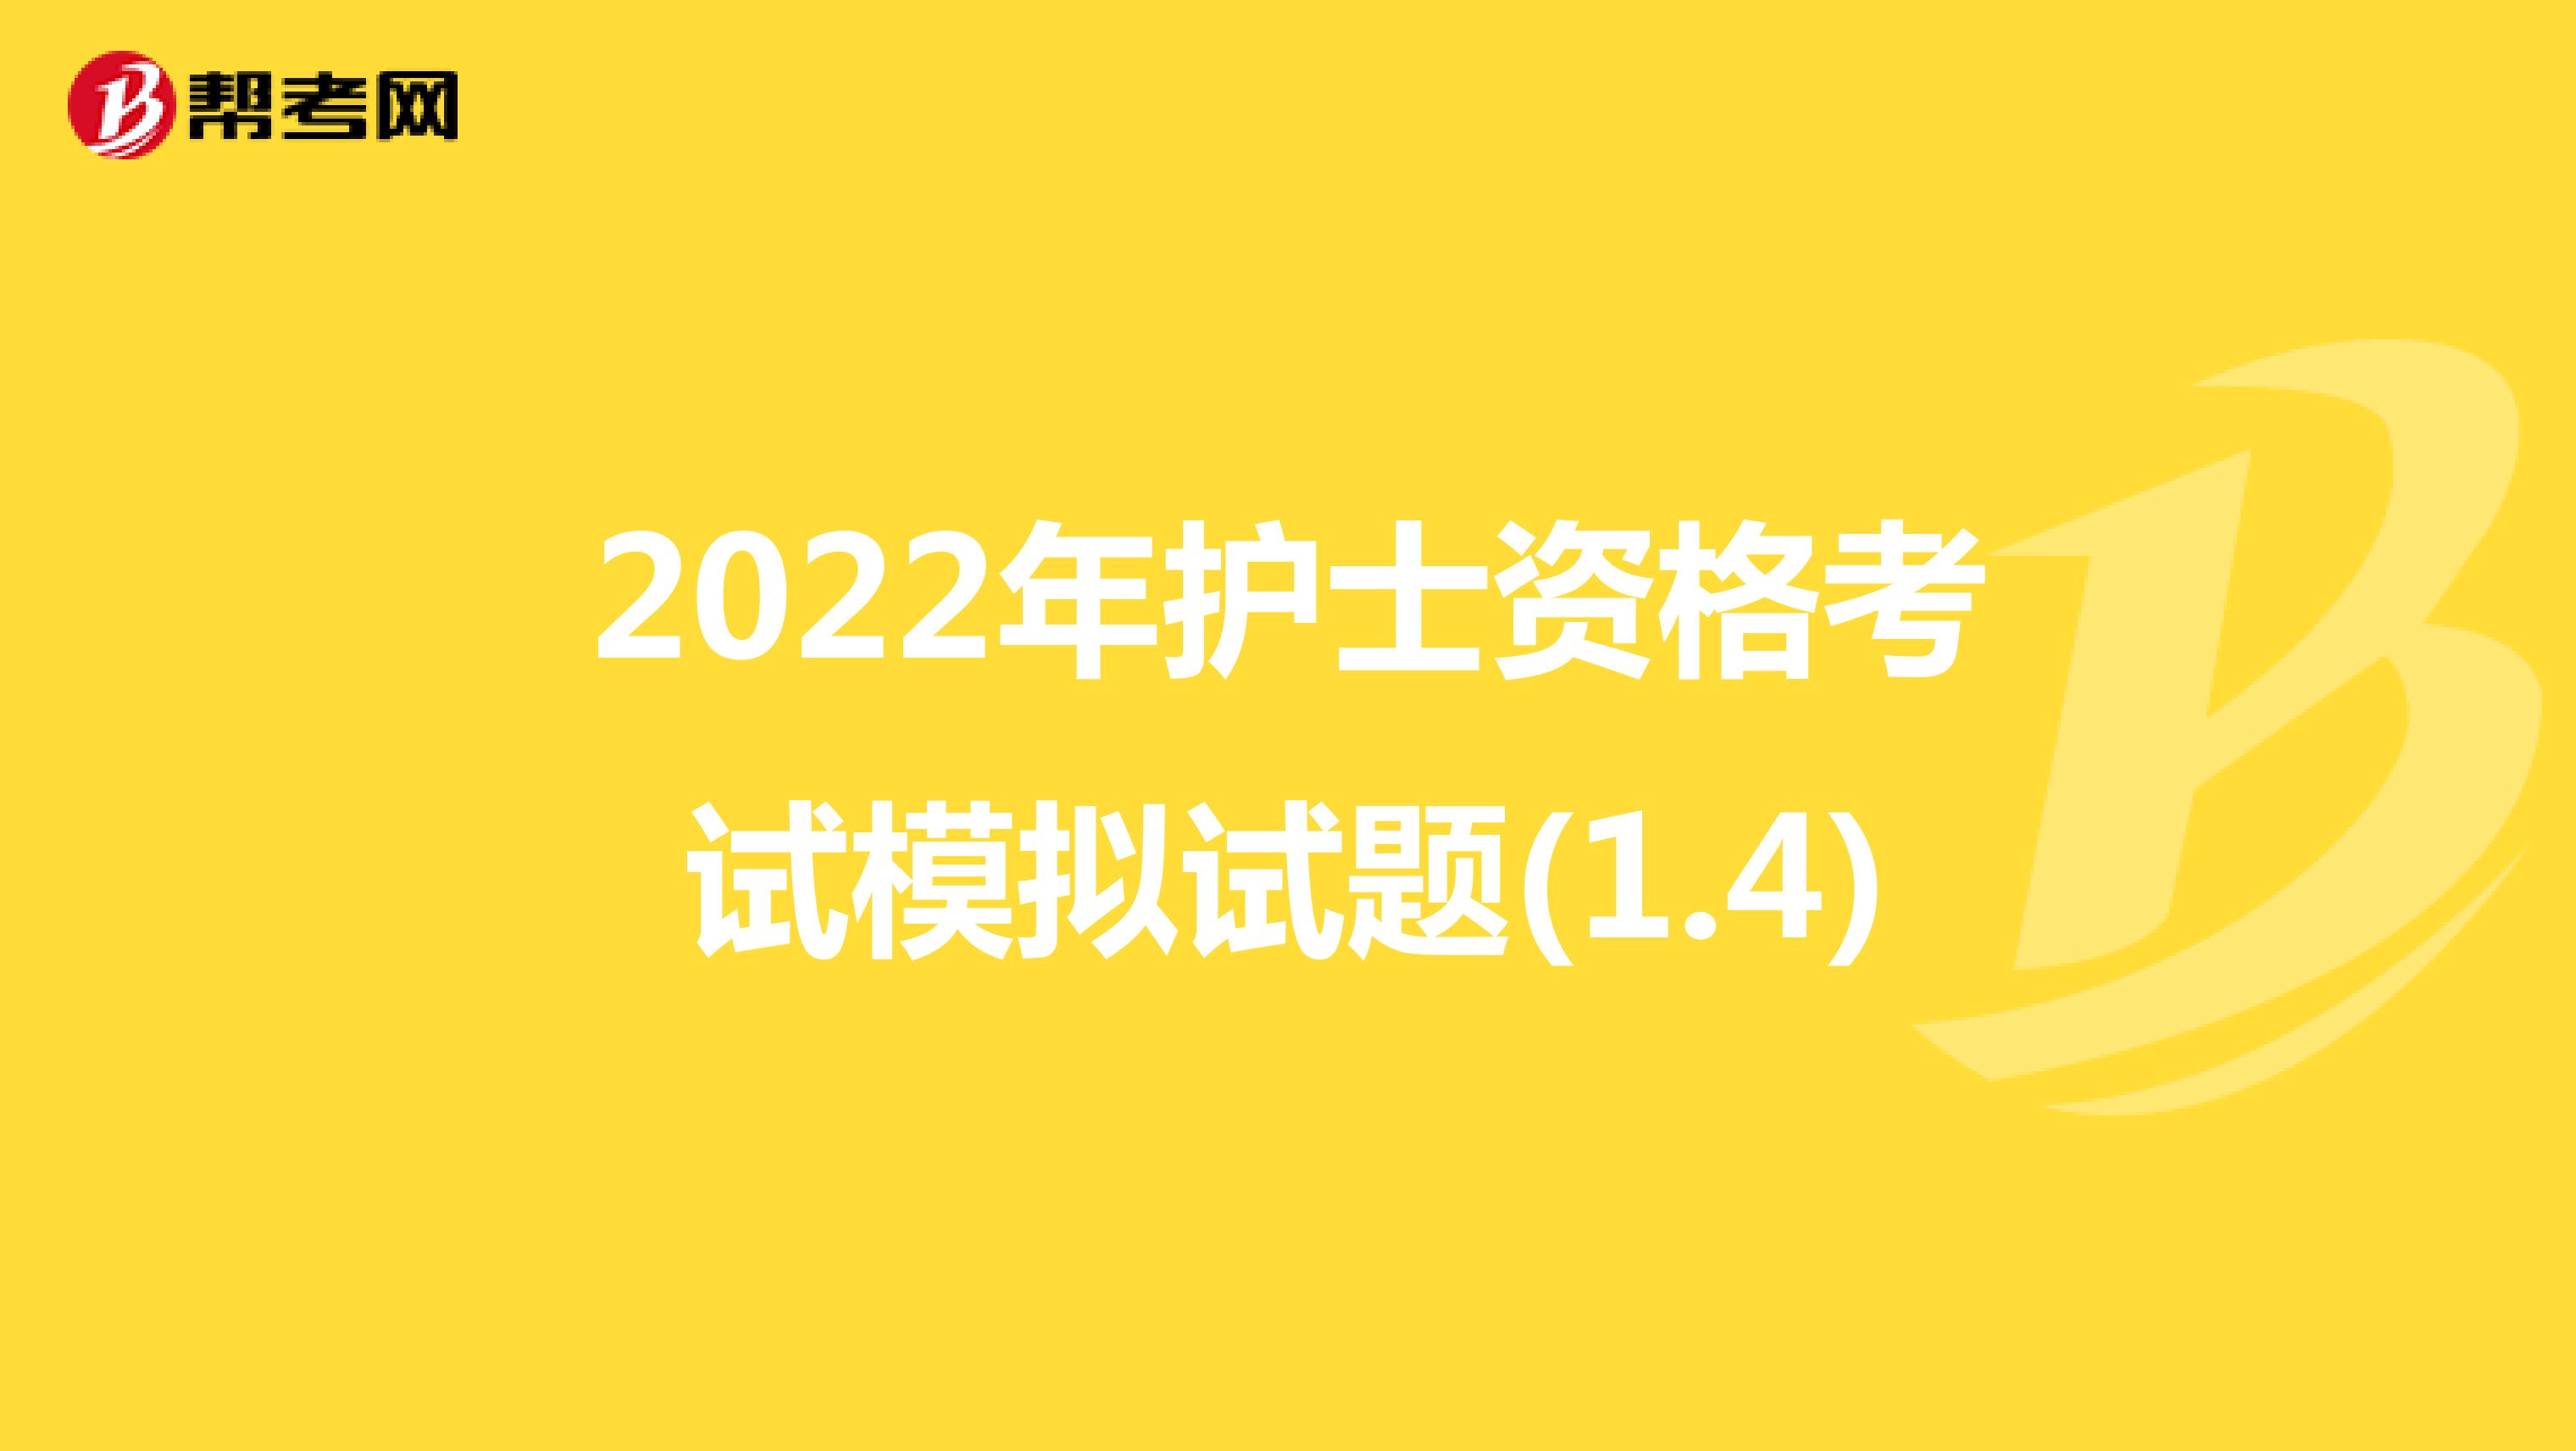 2022年护士资格考试模拟试题(1.4)